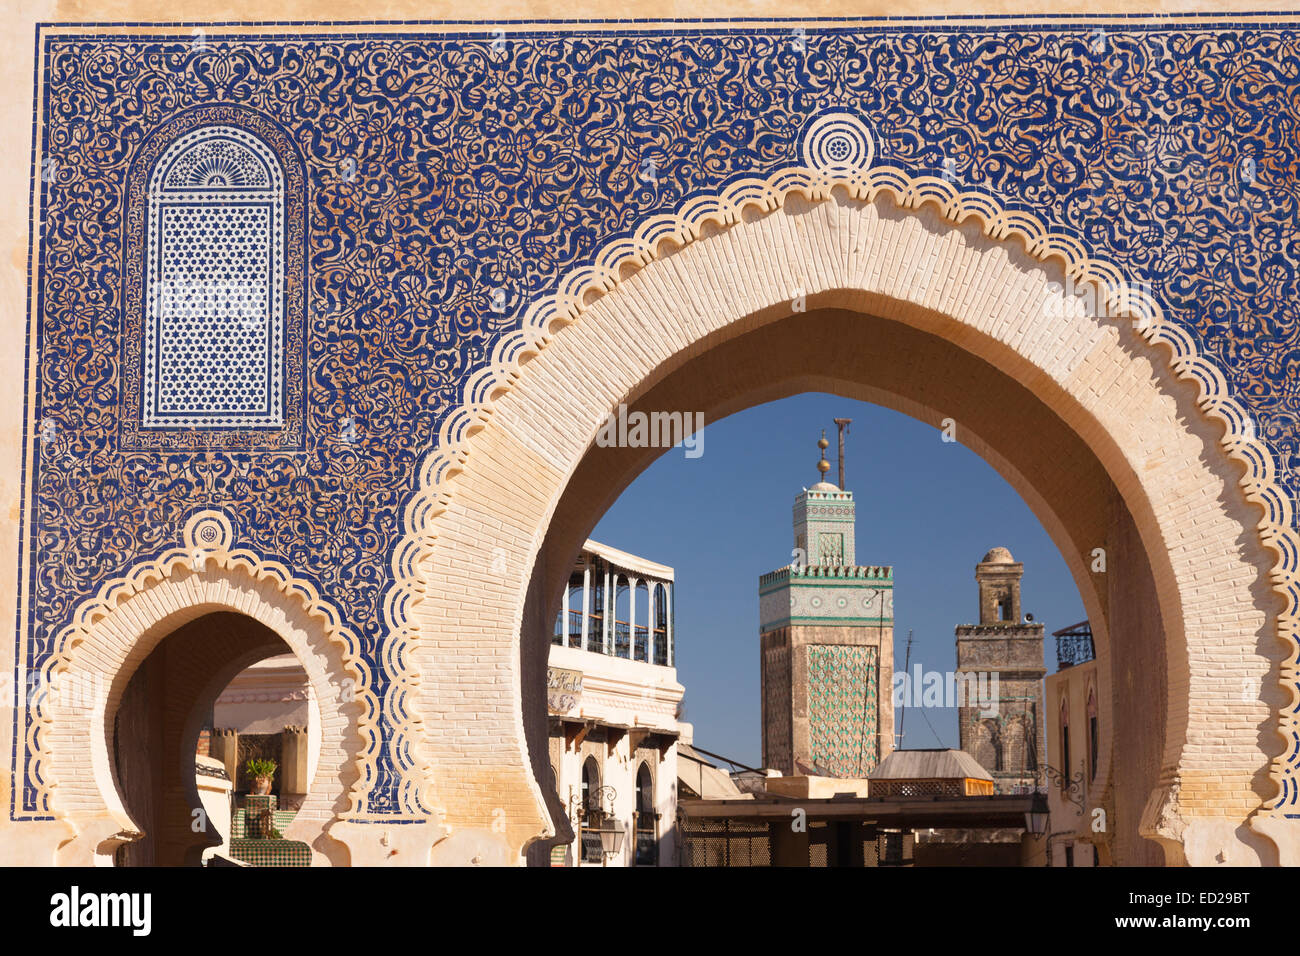 La porte Bab Bou Jloud. Medina. La ville de Fès. Le Maroc. L'Afrique du Nord. Afrique du Sud Banque D'Images